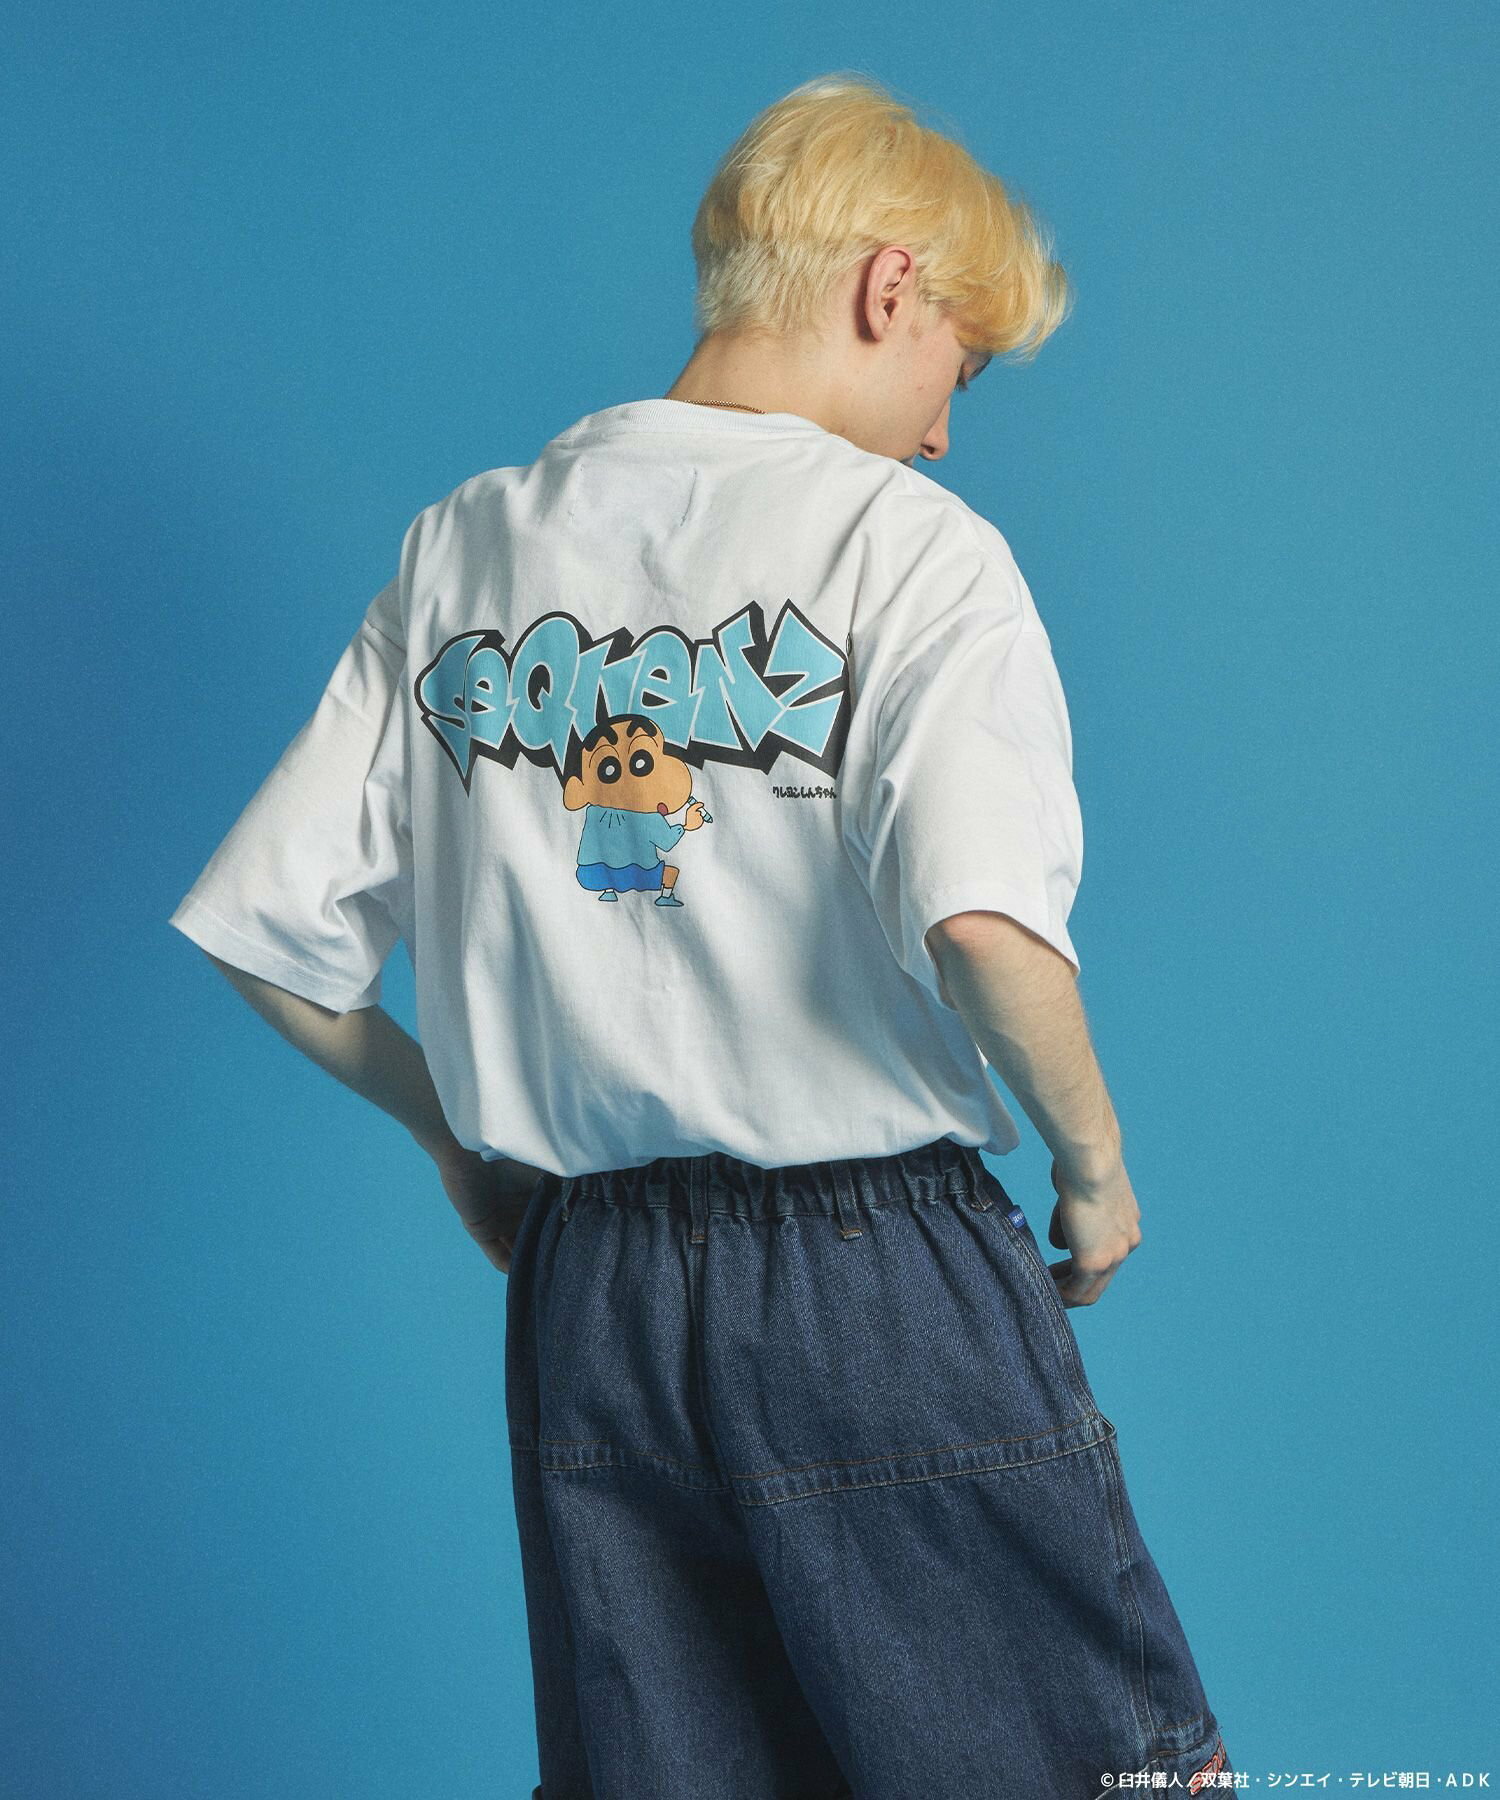 【SEQUENZ】CS*SQNZ GRAFFITI S/S TEE / クレヨンしんちゃん 半袖Tシャツ クルーネック ワンポイント バックプリント 刺繍